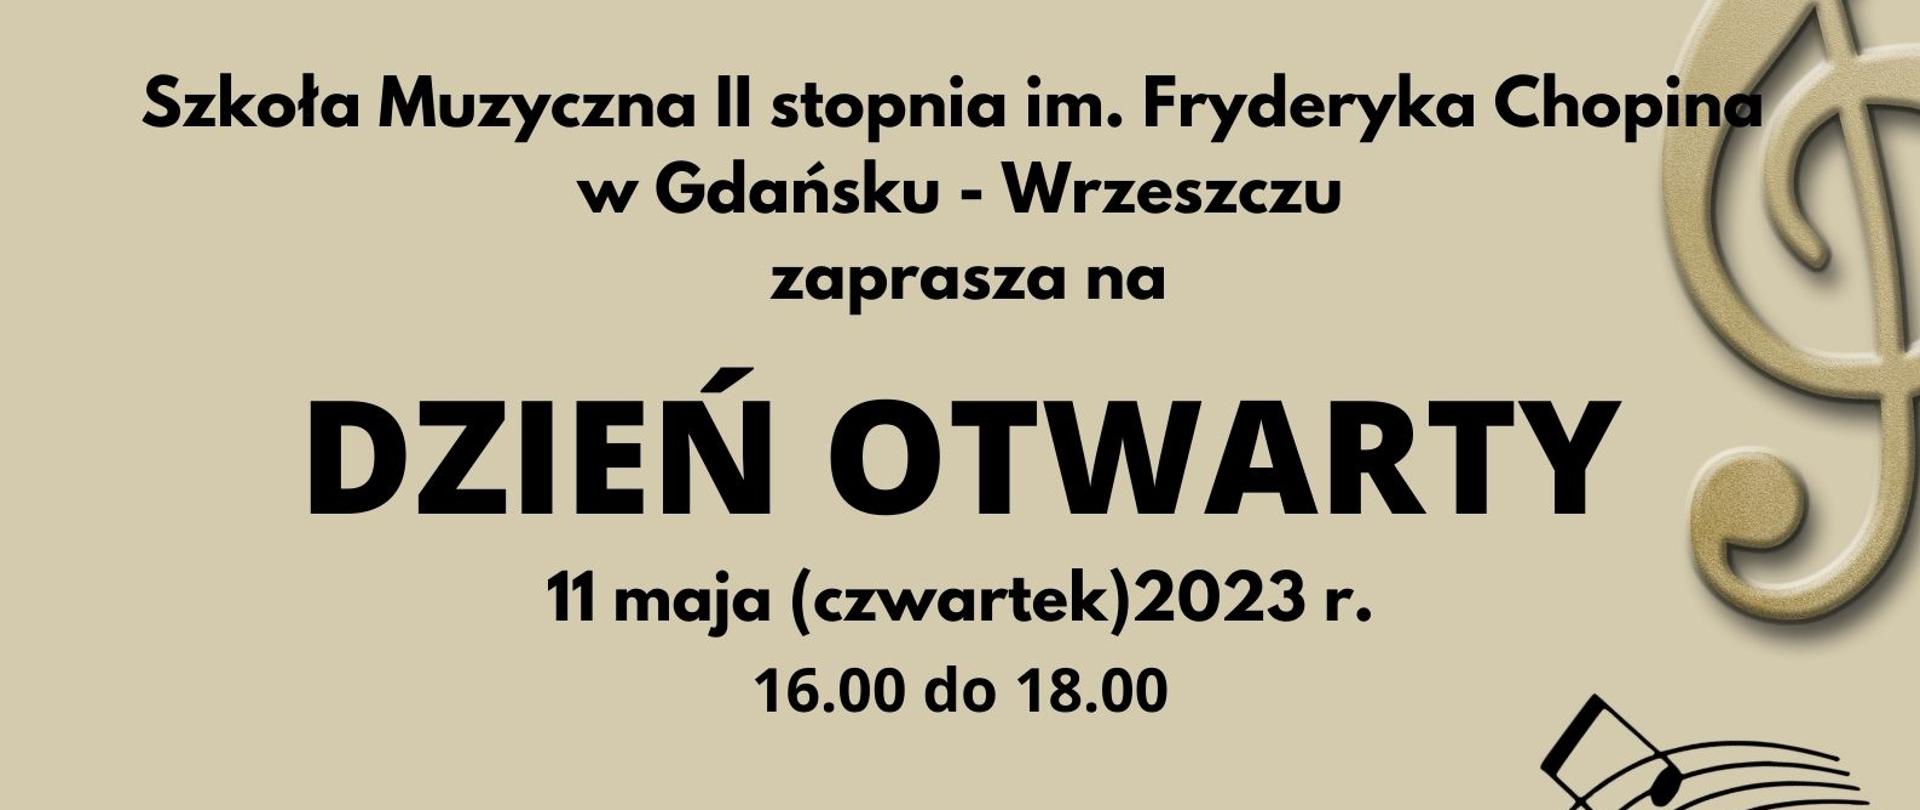 Plak informujący o Dniu Otwartym Szkoły Muzycznej II st w Gdańsku- Wrzeszczu, który odbędzie się 11 maja 2023 r.